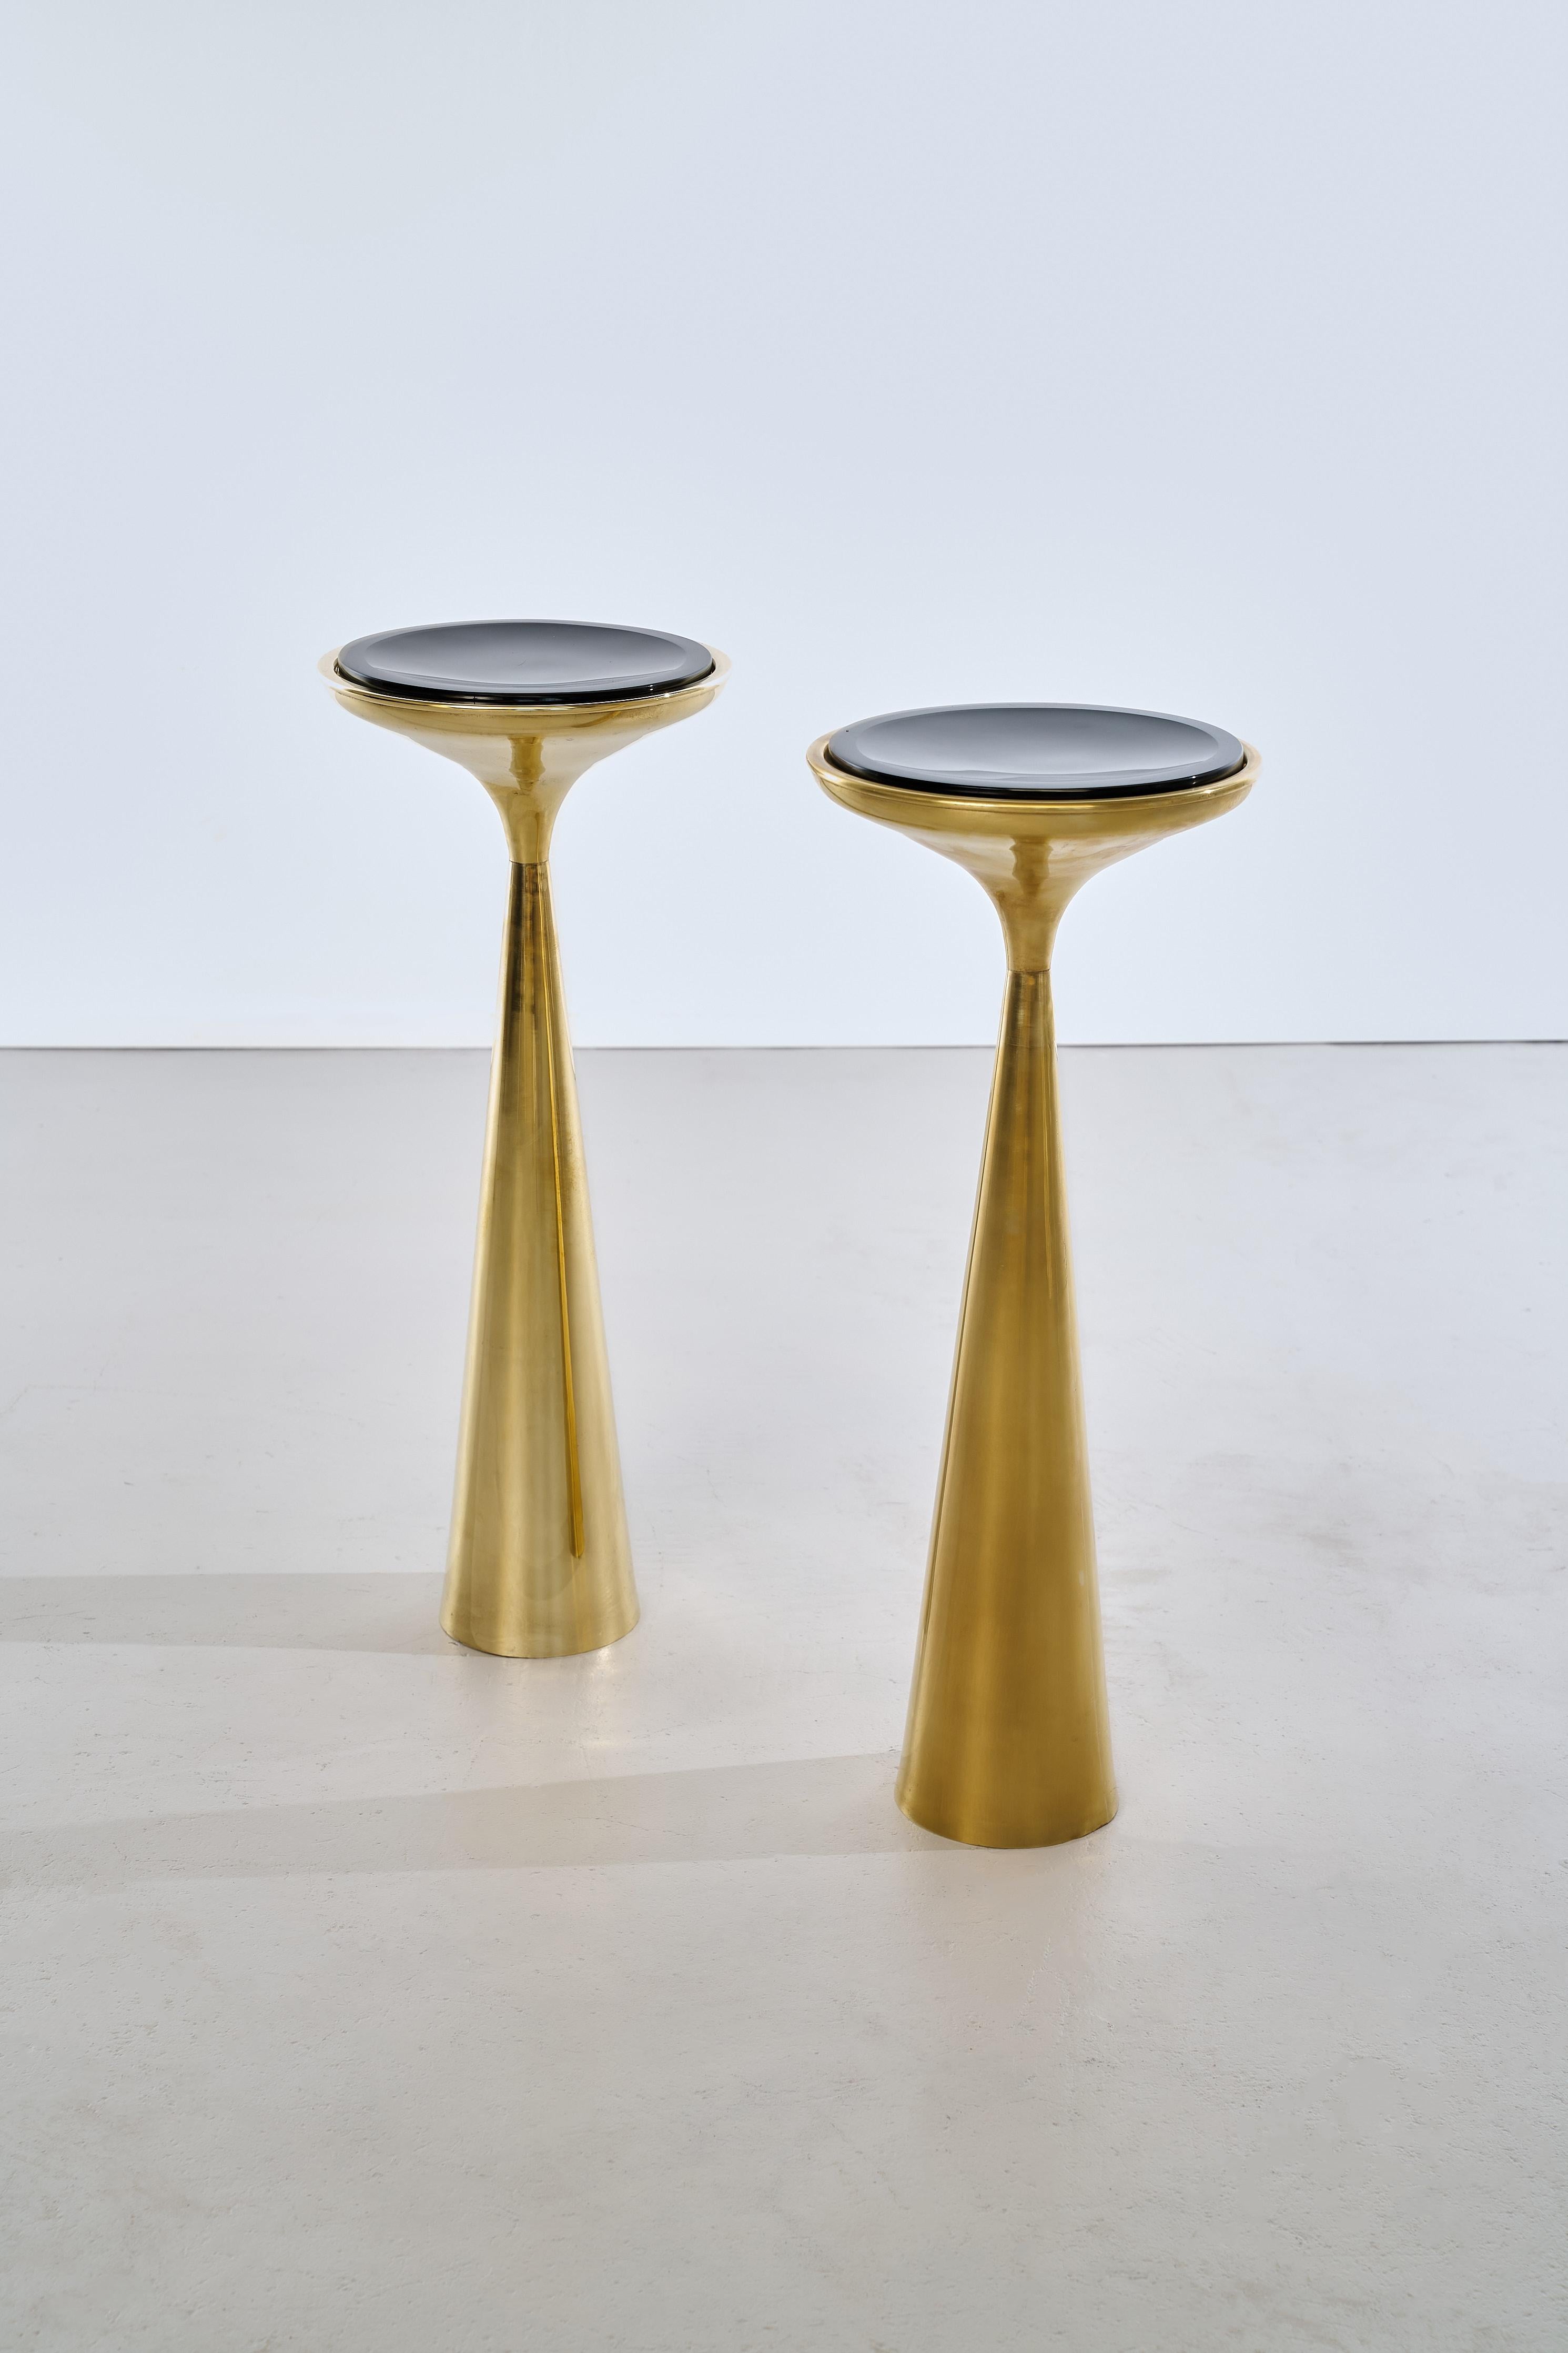 La table d'appoint Mod. 1776 Side Table, conçue par Max Ingrand pour Fontana Arte dans les années 1960, est un classique du mobilier moderne italien du milieu du siècle. Max Ingrand était un designer et artiste franco-italien de renom, connu pour